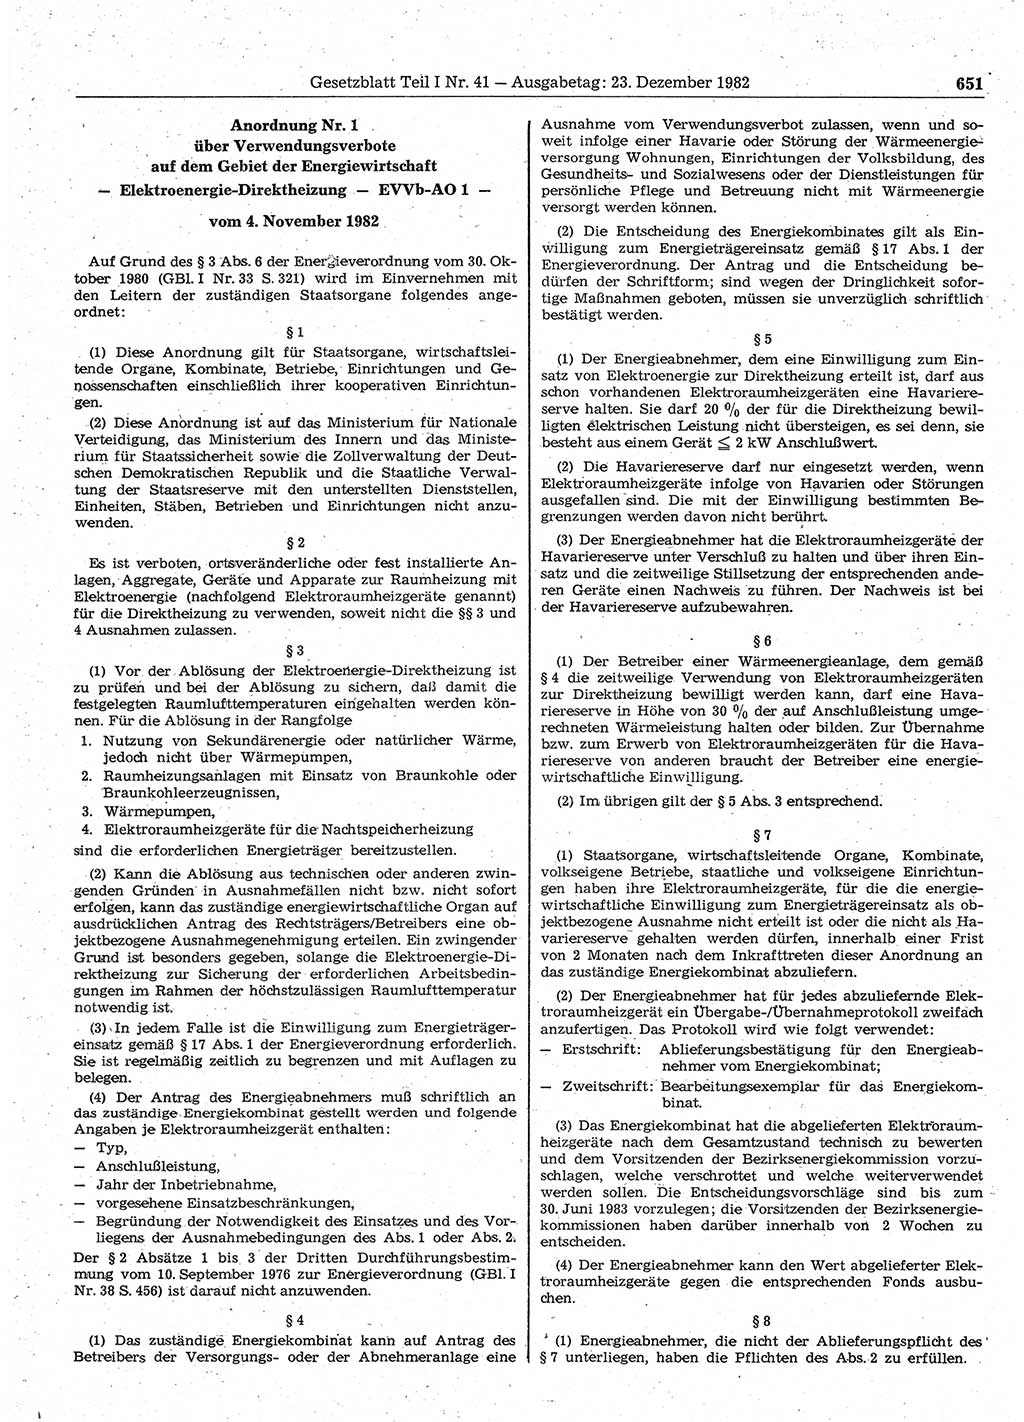 Gesetzblatt (GBl.) der Deutschen Demokratischen Republik (DDR) Teil Ⅰ 1982, Seite 651 (GBl. DDR Ⅰ 1982, S. 651)